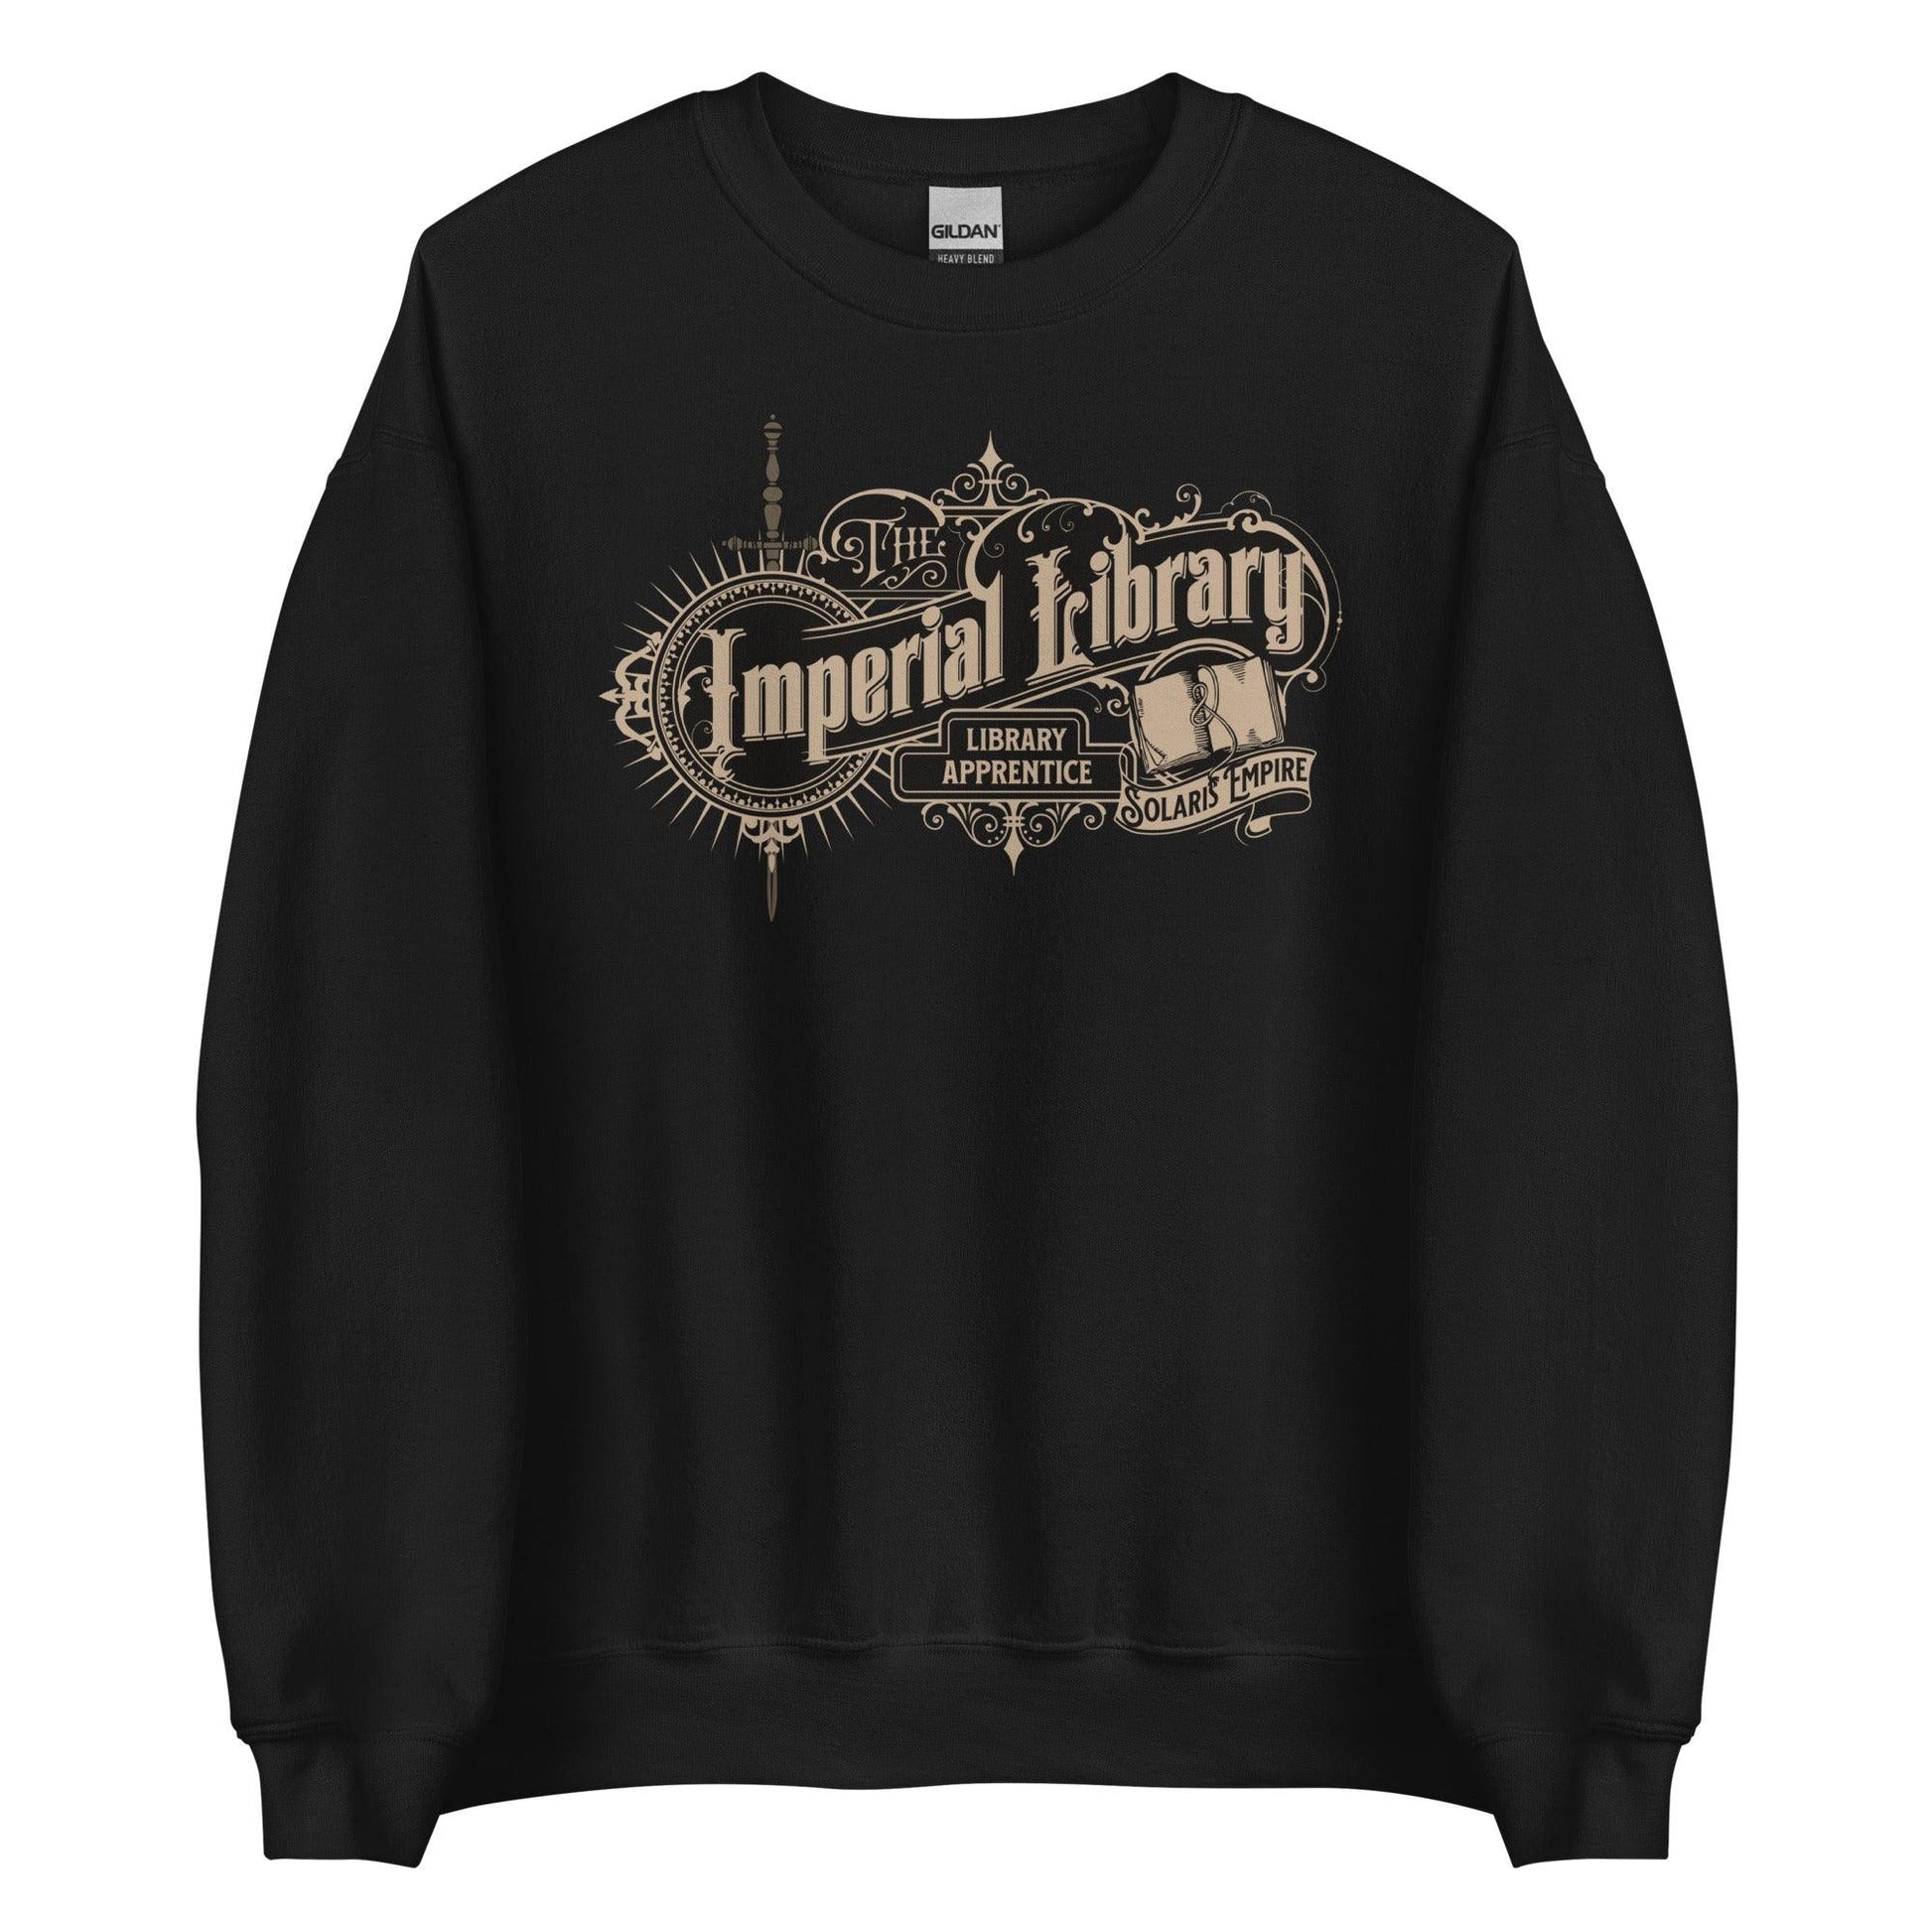 Imperial Library Apprentice Sweatshirt - The Bean Workshop - air awakens, elise kova, sweatshirt